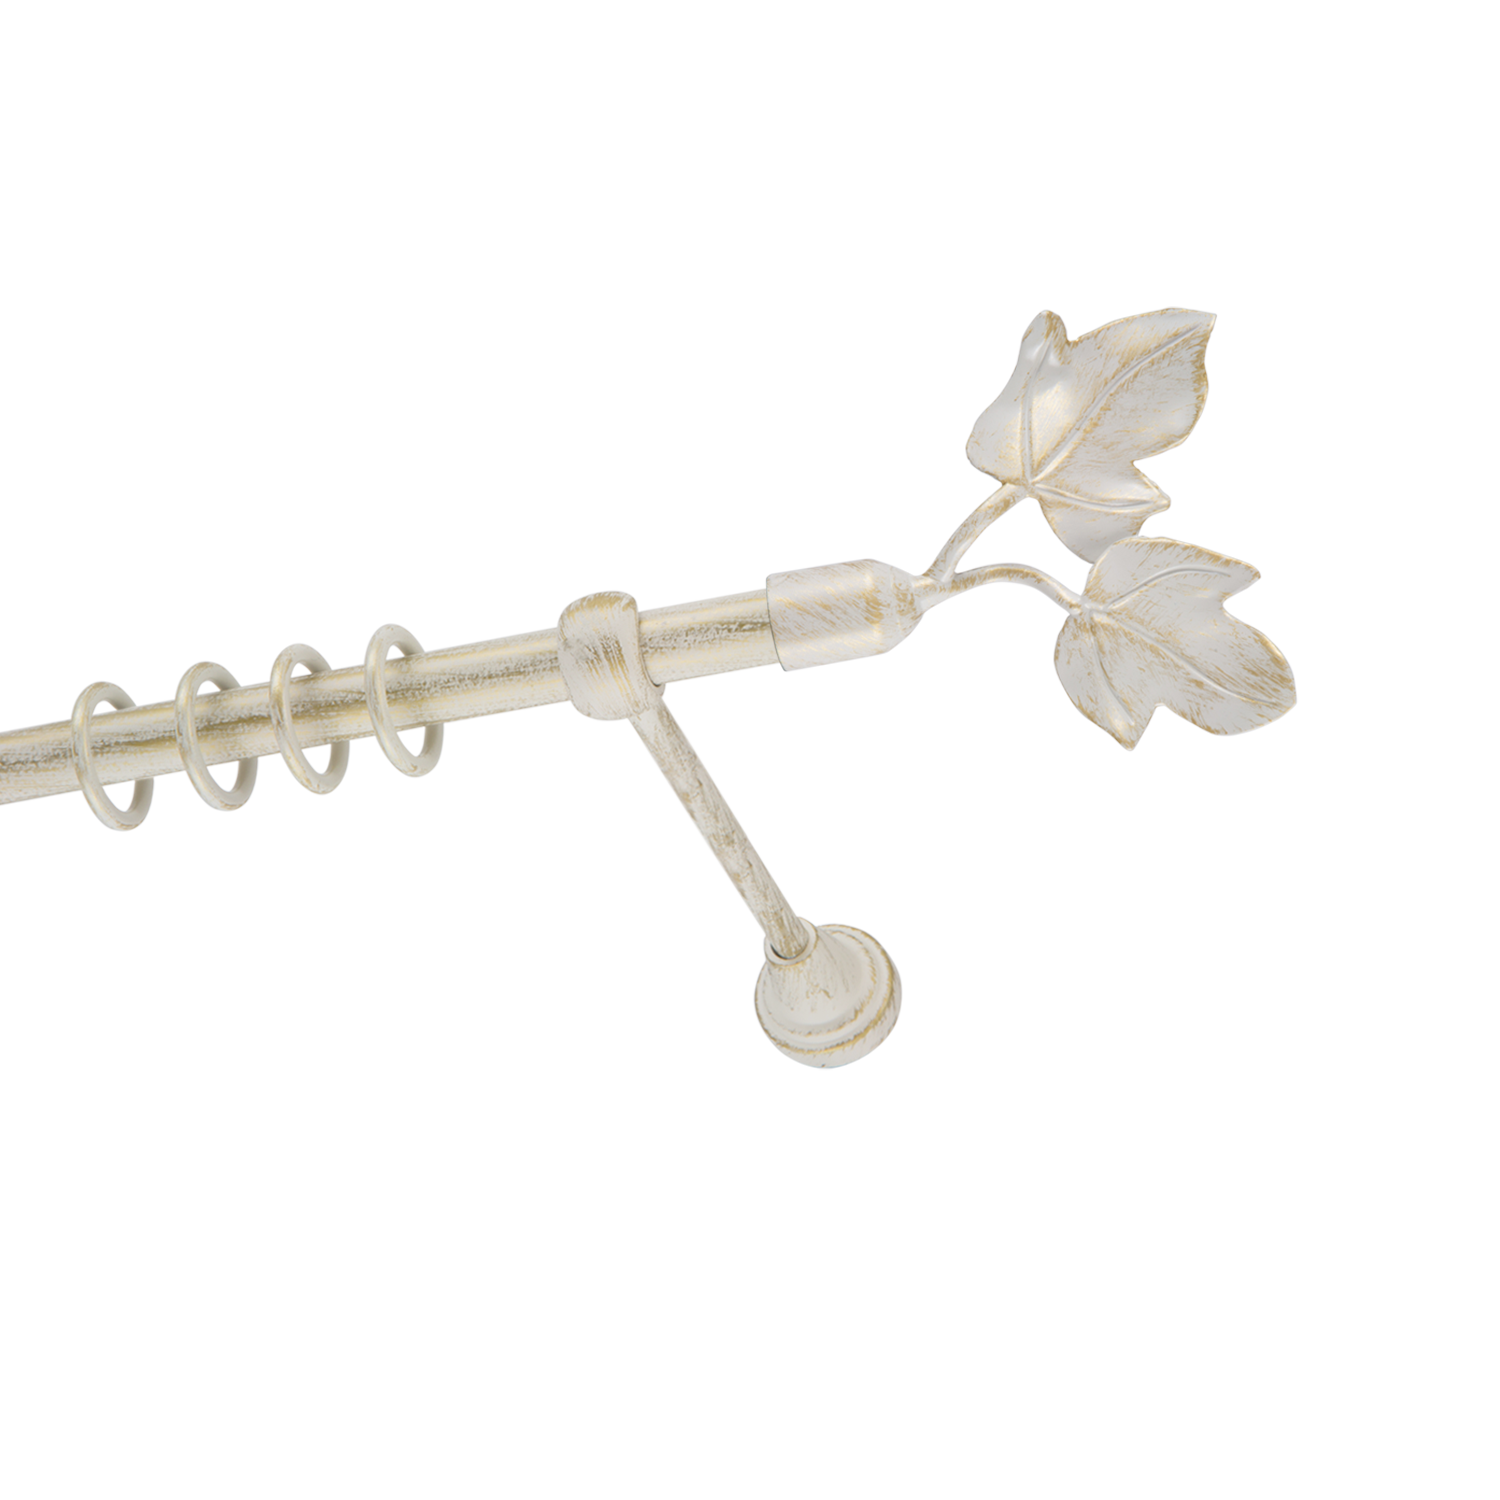 Металлический карниз для штор Листья, однорядный 16 мм, белый, гладкая штанга, длина 240 см - фото Wikidecor.ru